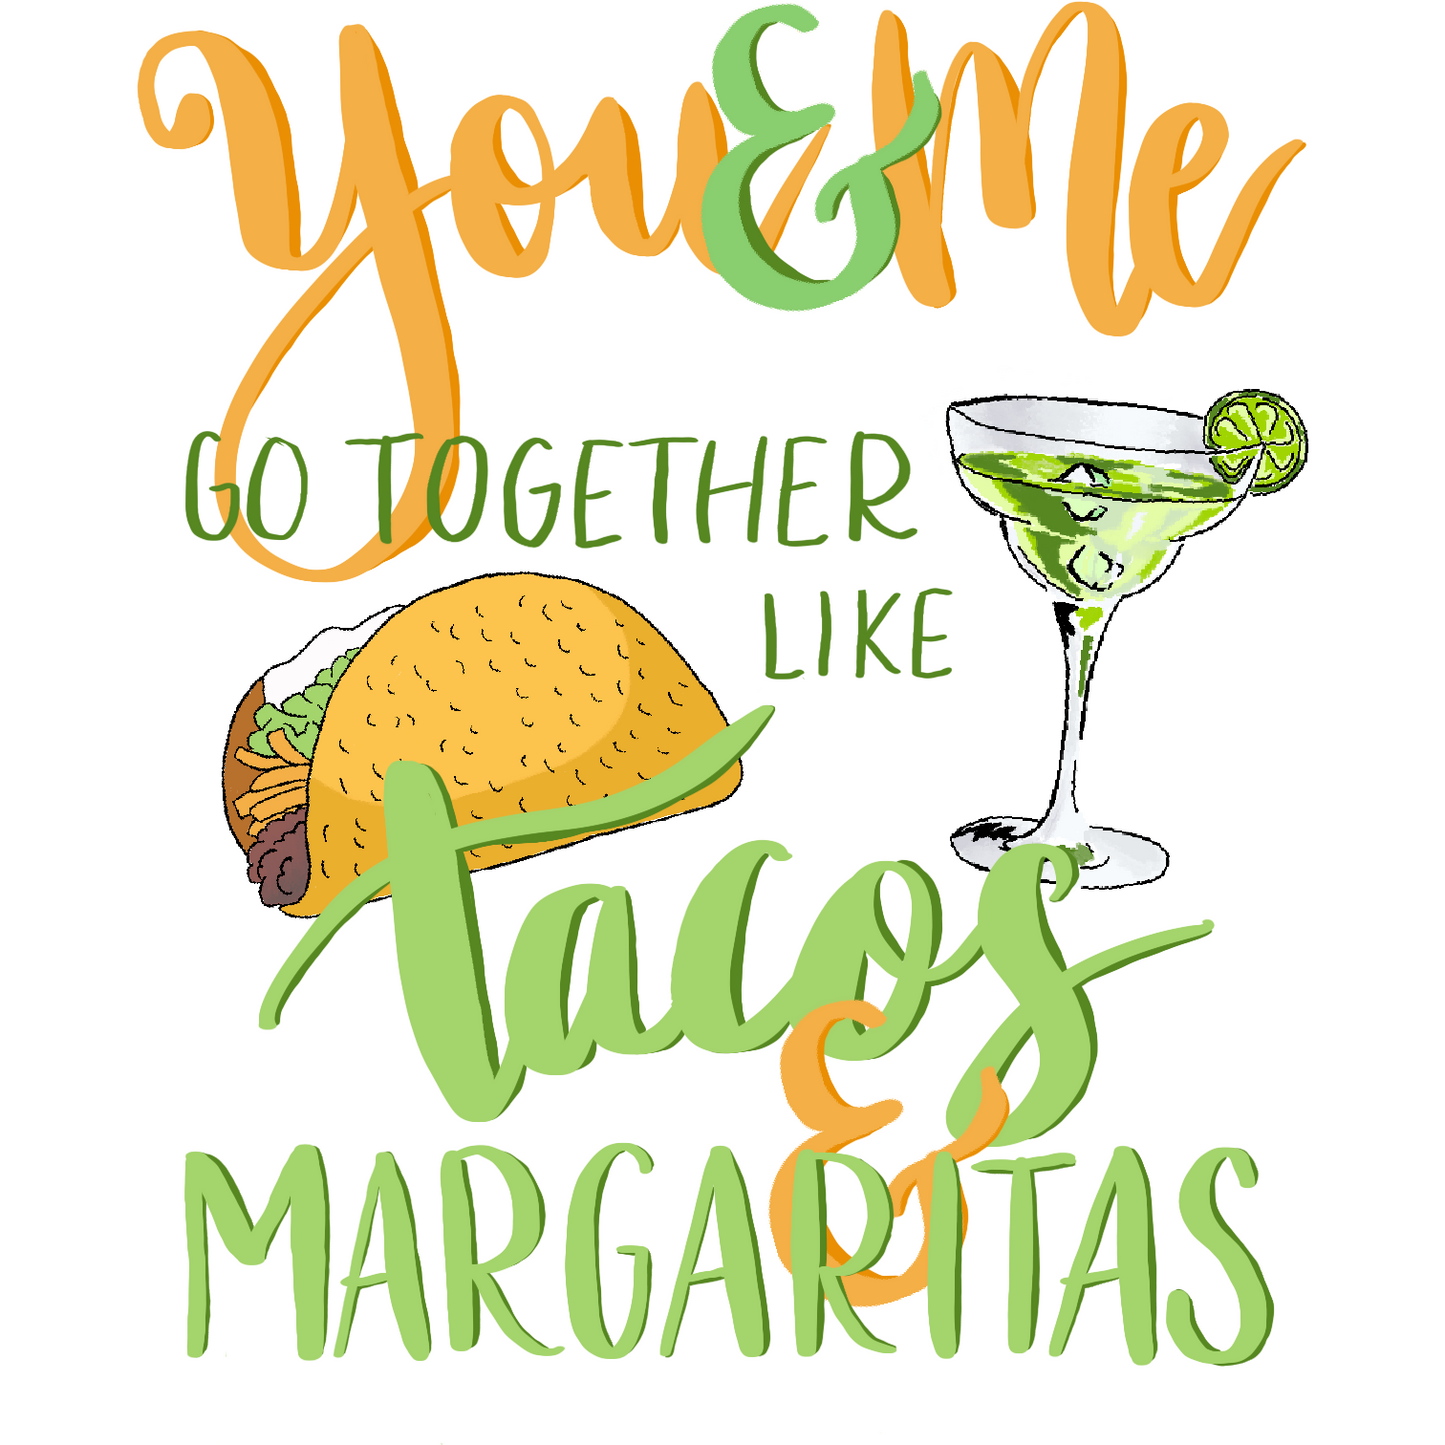 Tacos & Margaritas - You & Me Series -  - love, anniversary card